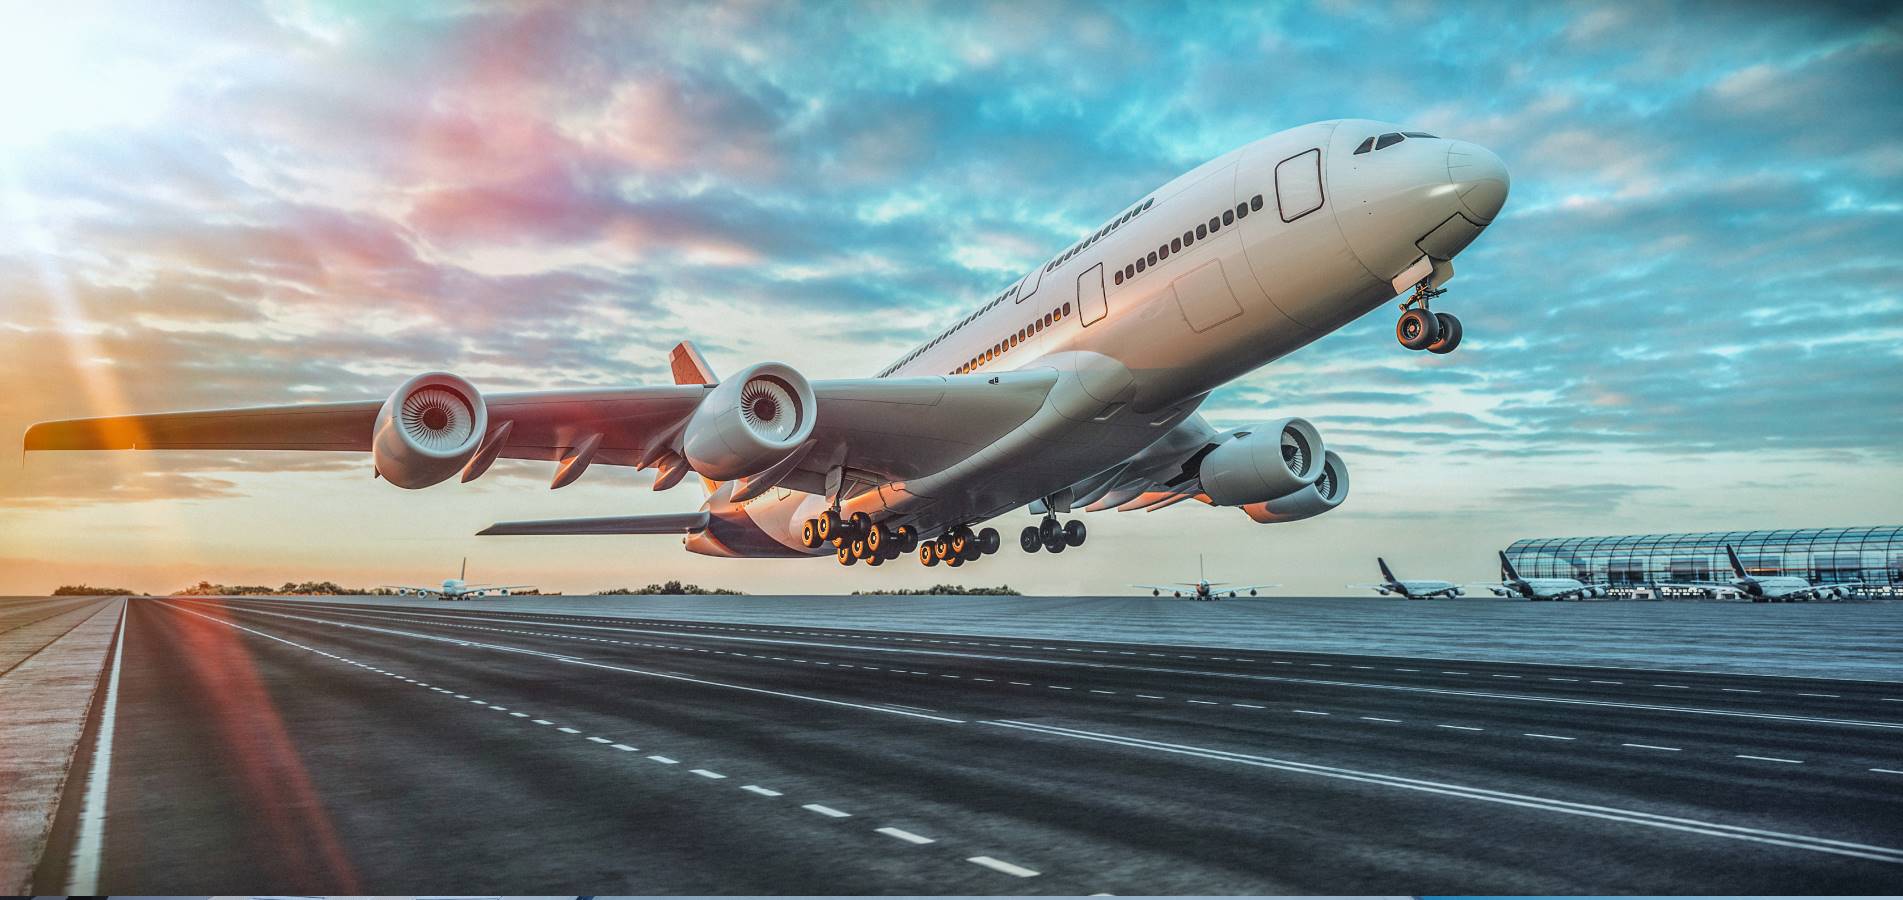 السياحة في تركيا 2021: شركة الكنانة للسياحة و السفر - خطوط طيران العربية